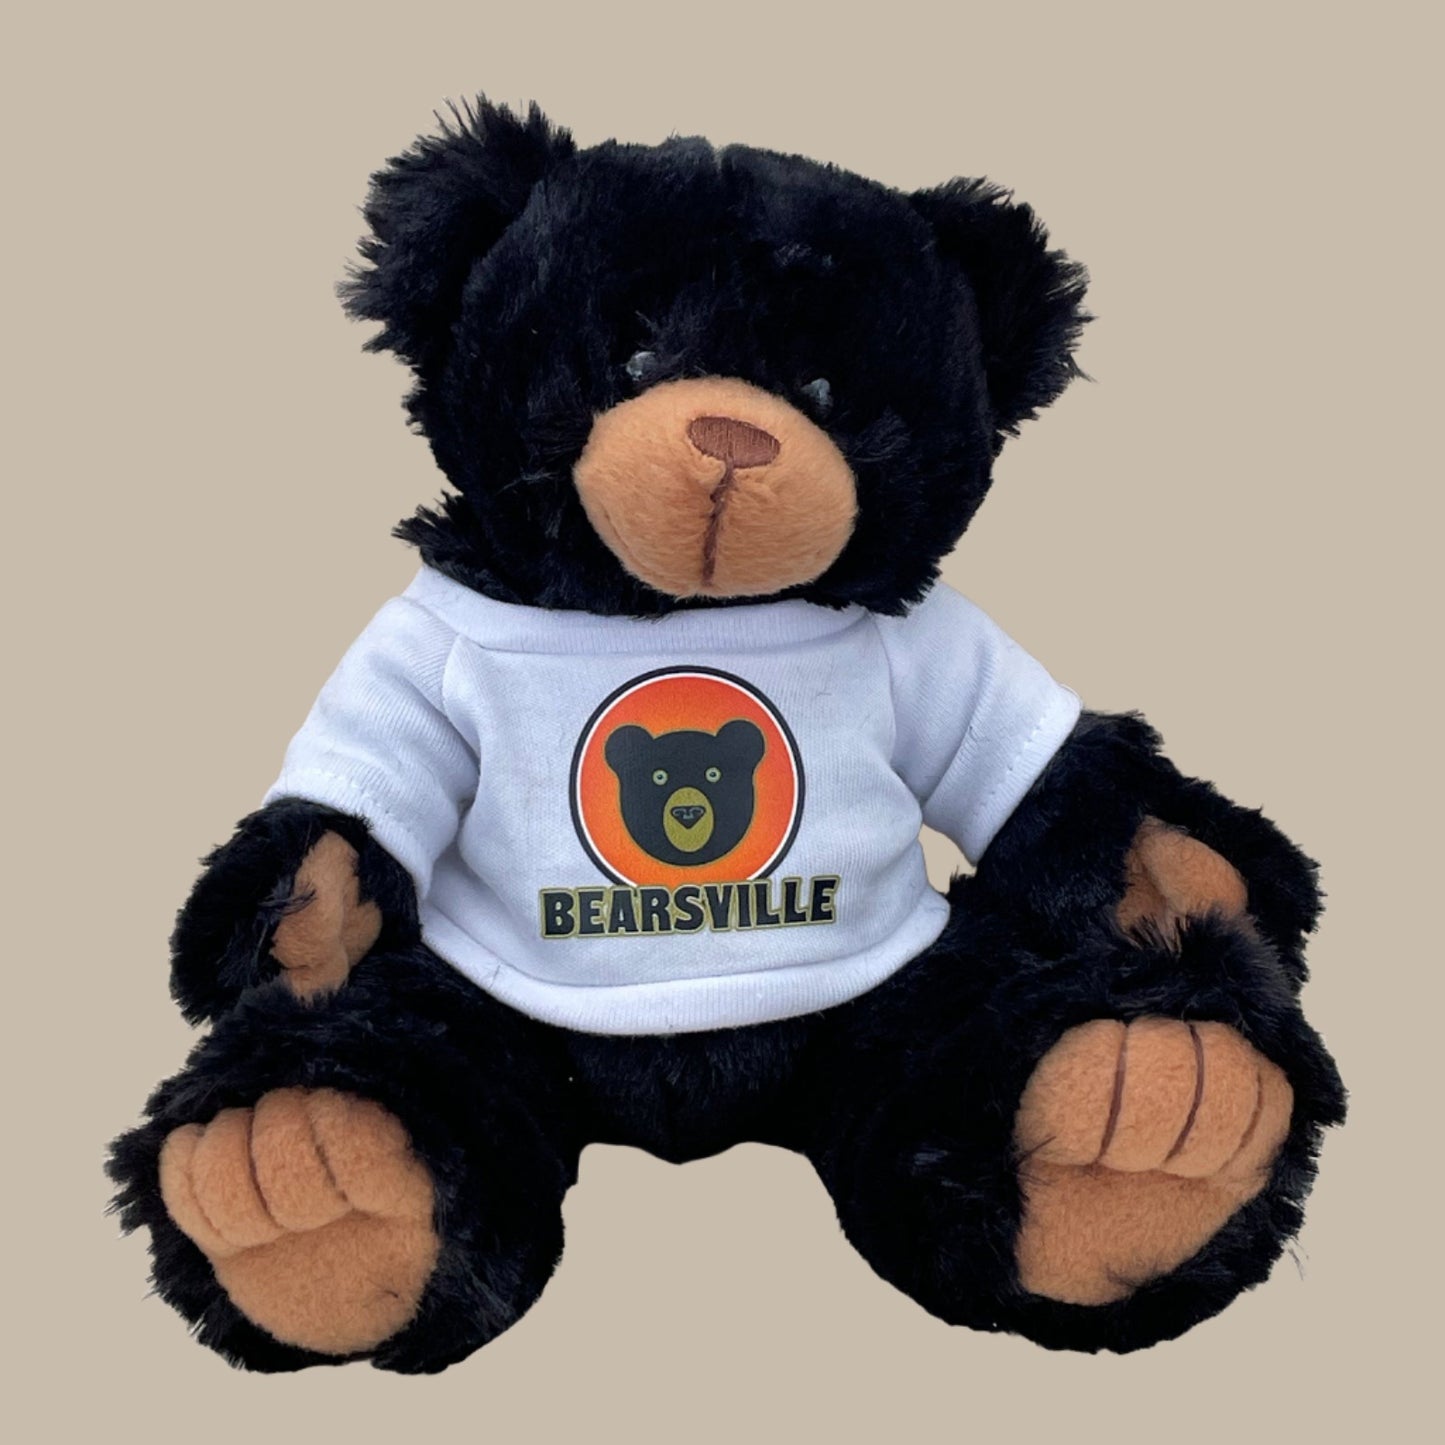 Bearsville Bear wearing Bearsville Tee